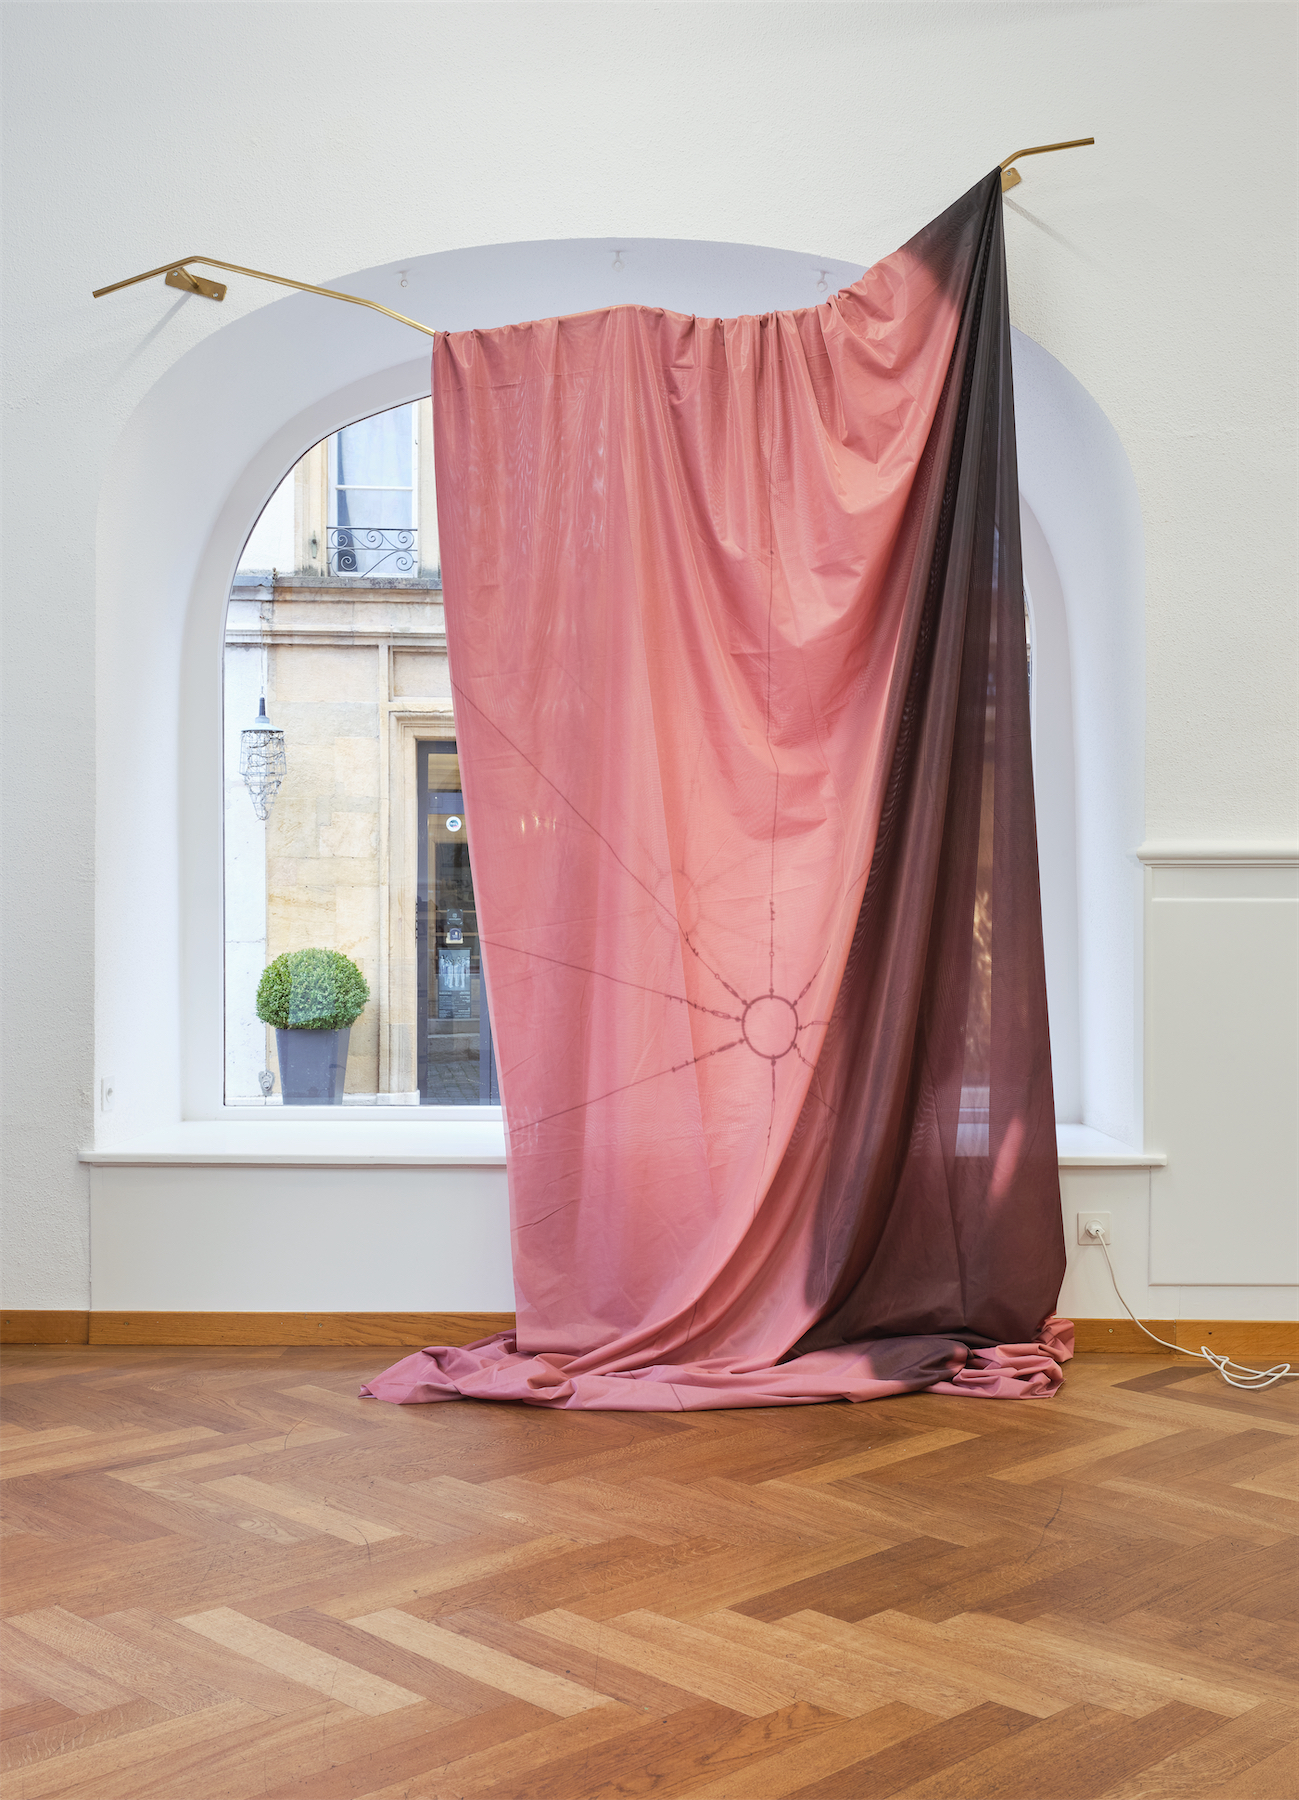 Installation views Stitches. Home as Composition, Clare Kenny, KRONE COURONNE, 2022. Photo: © Nicolas Delaroche Studio